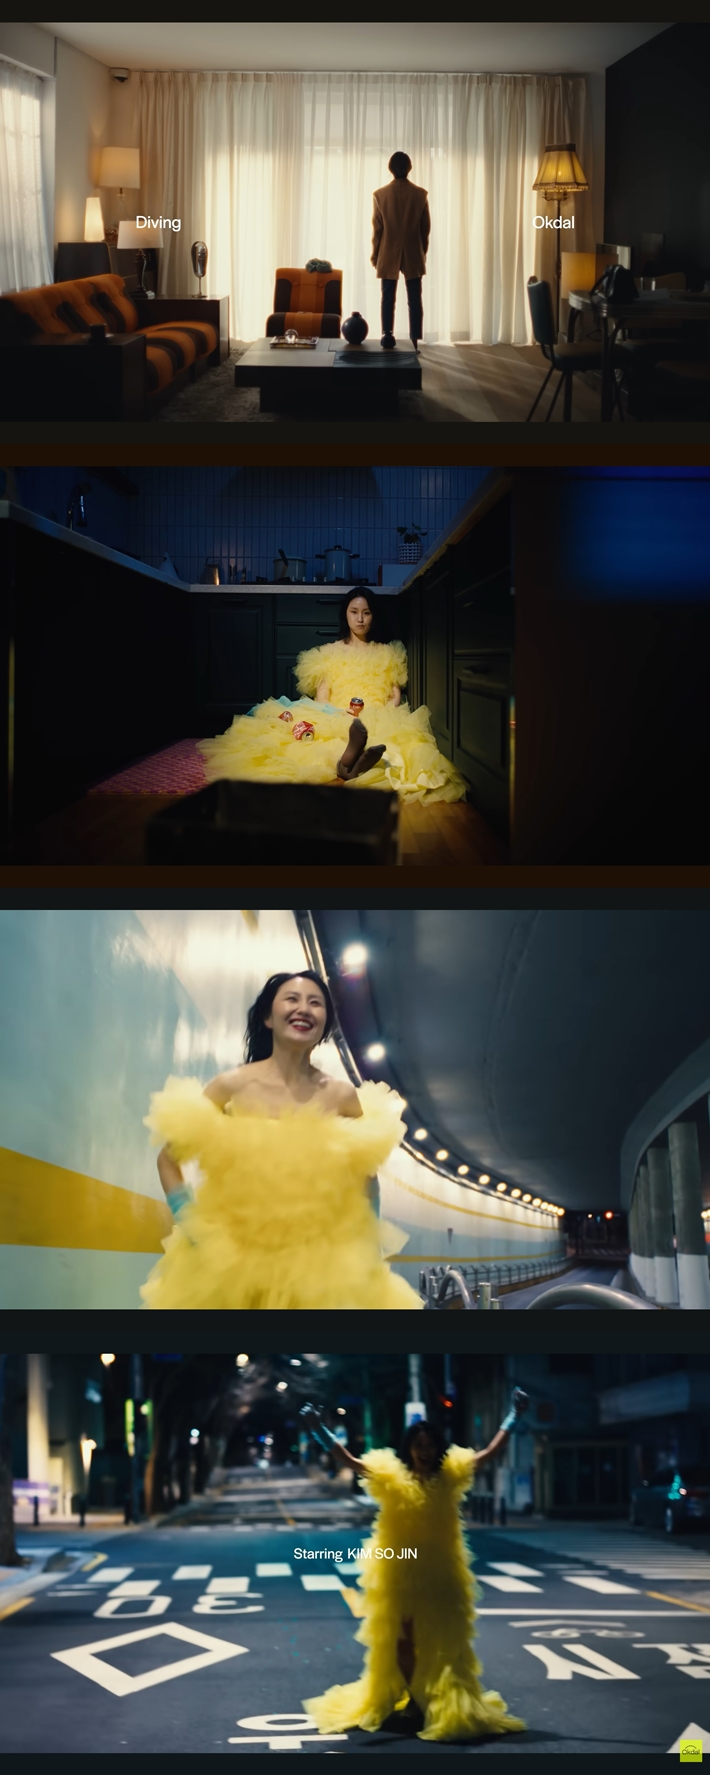 뮤직비디오의 처음와 끝을 모두 김소진이 장식한다. '다이빙' 뮤직비디오 캡처